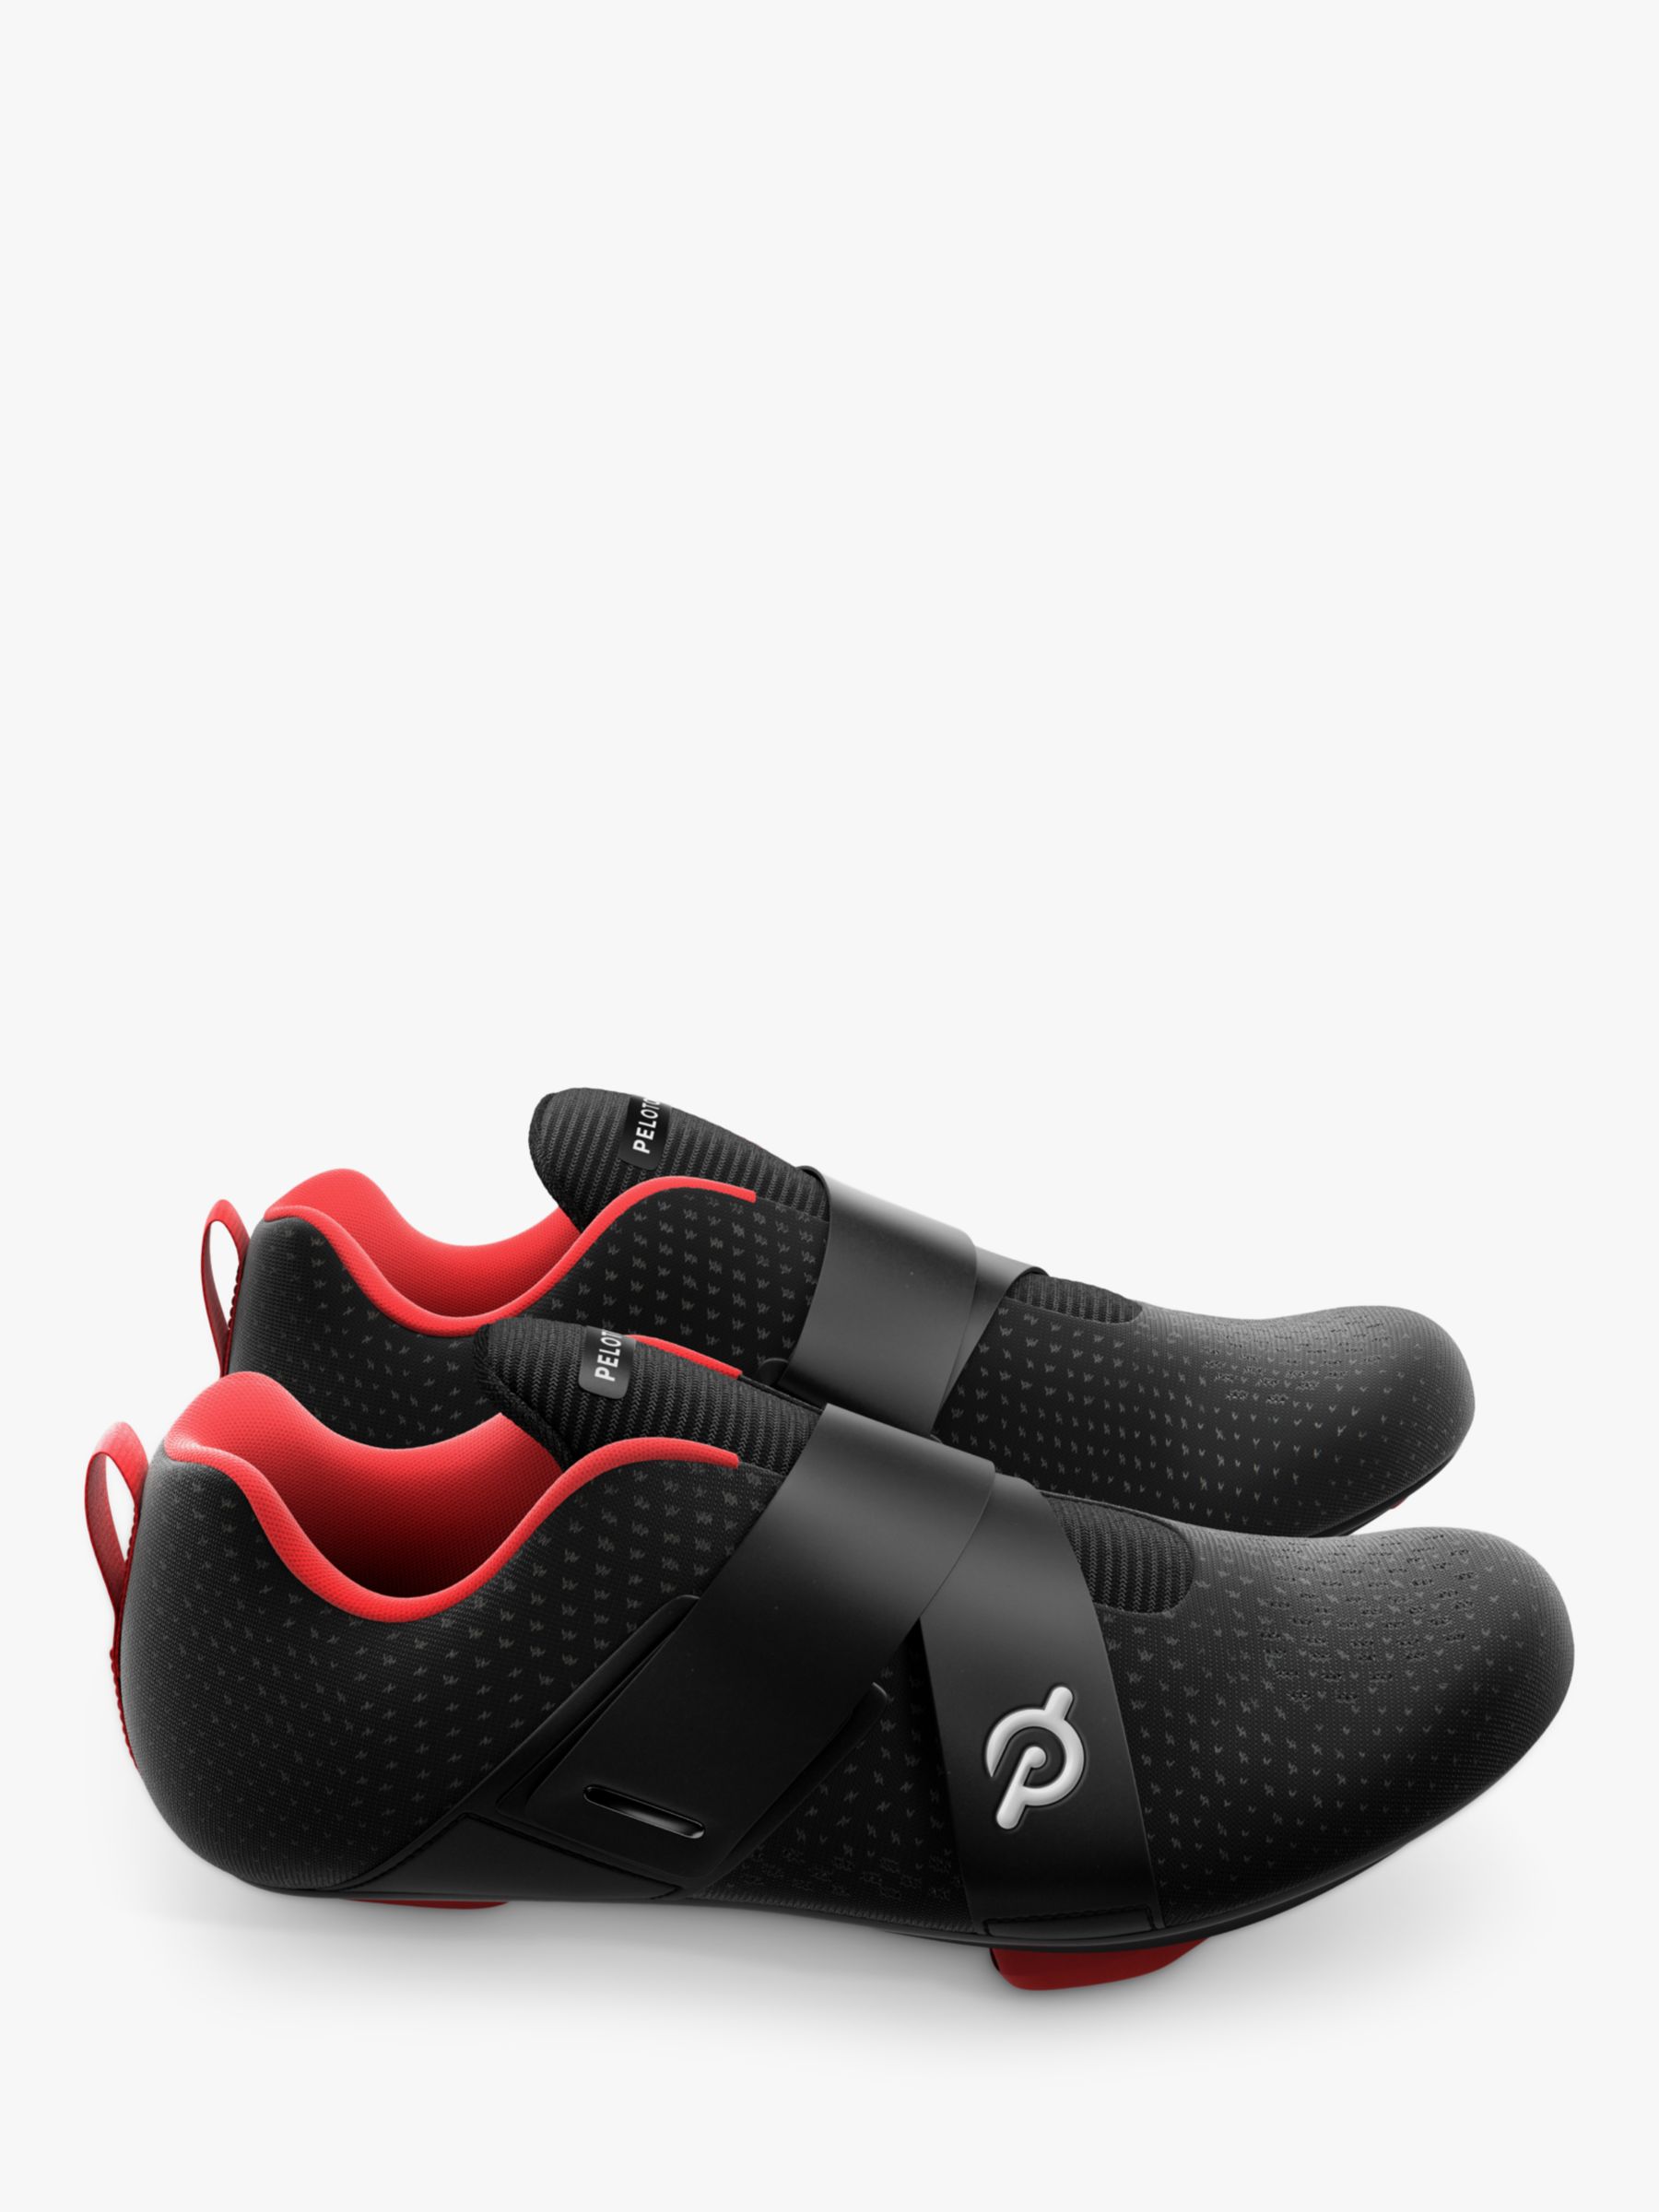 Peloton Altos Cycling Shoes, Black/Red, 6.5